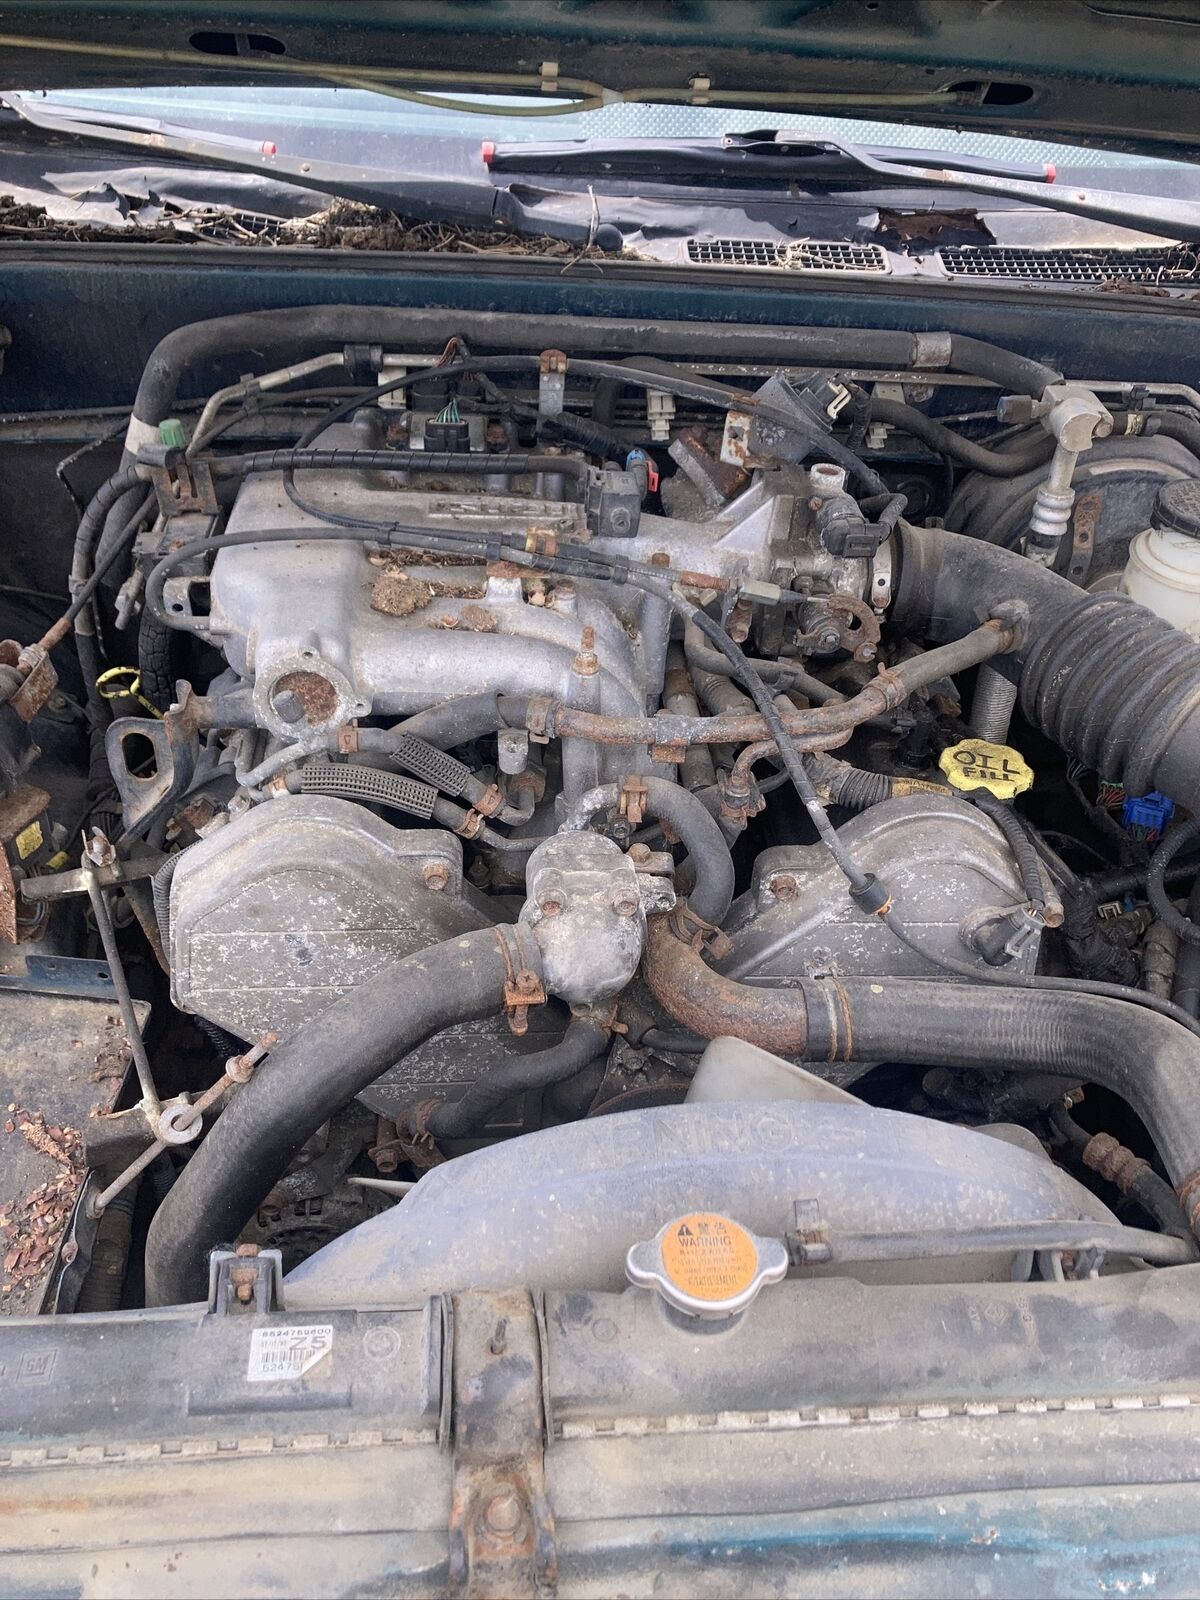 1997 Isuzu Rodeo 4WD 24v V6 Parts See Description | eBay